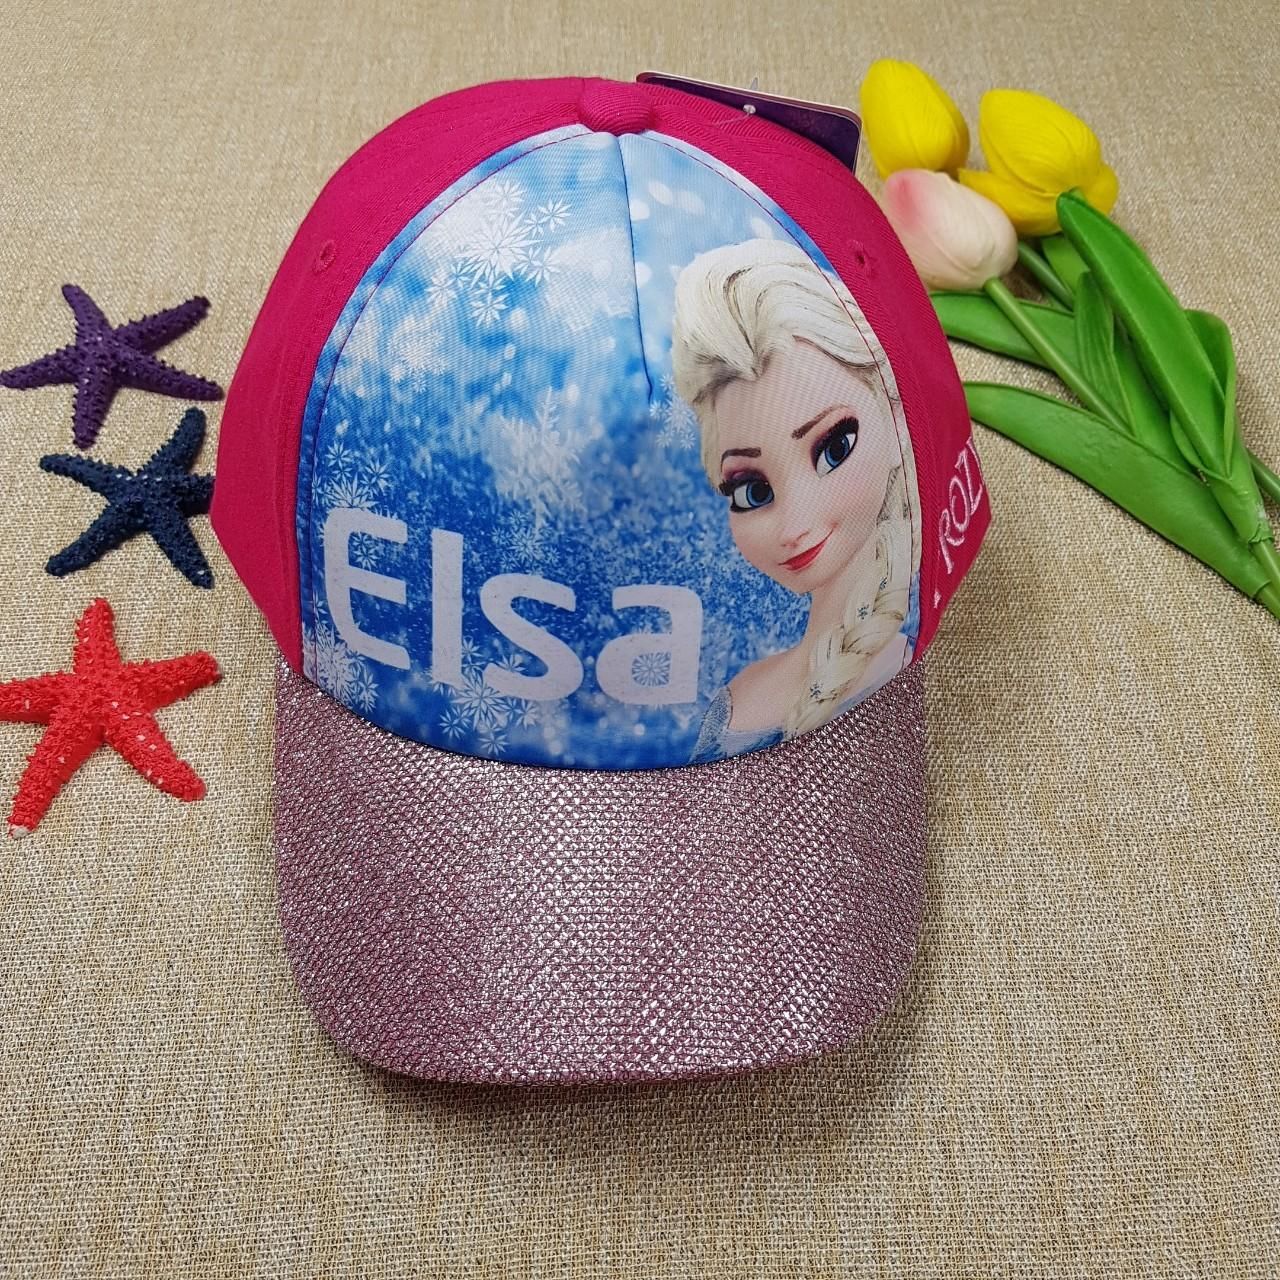  Nón Elsa cho bé 